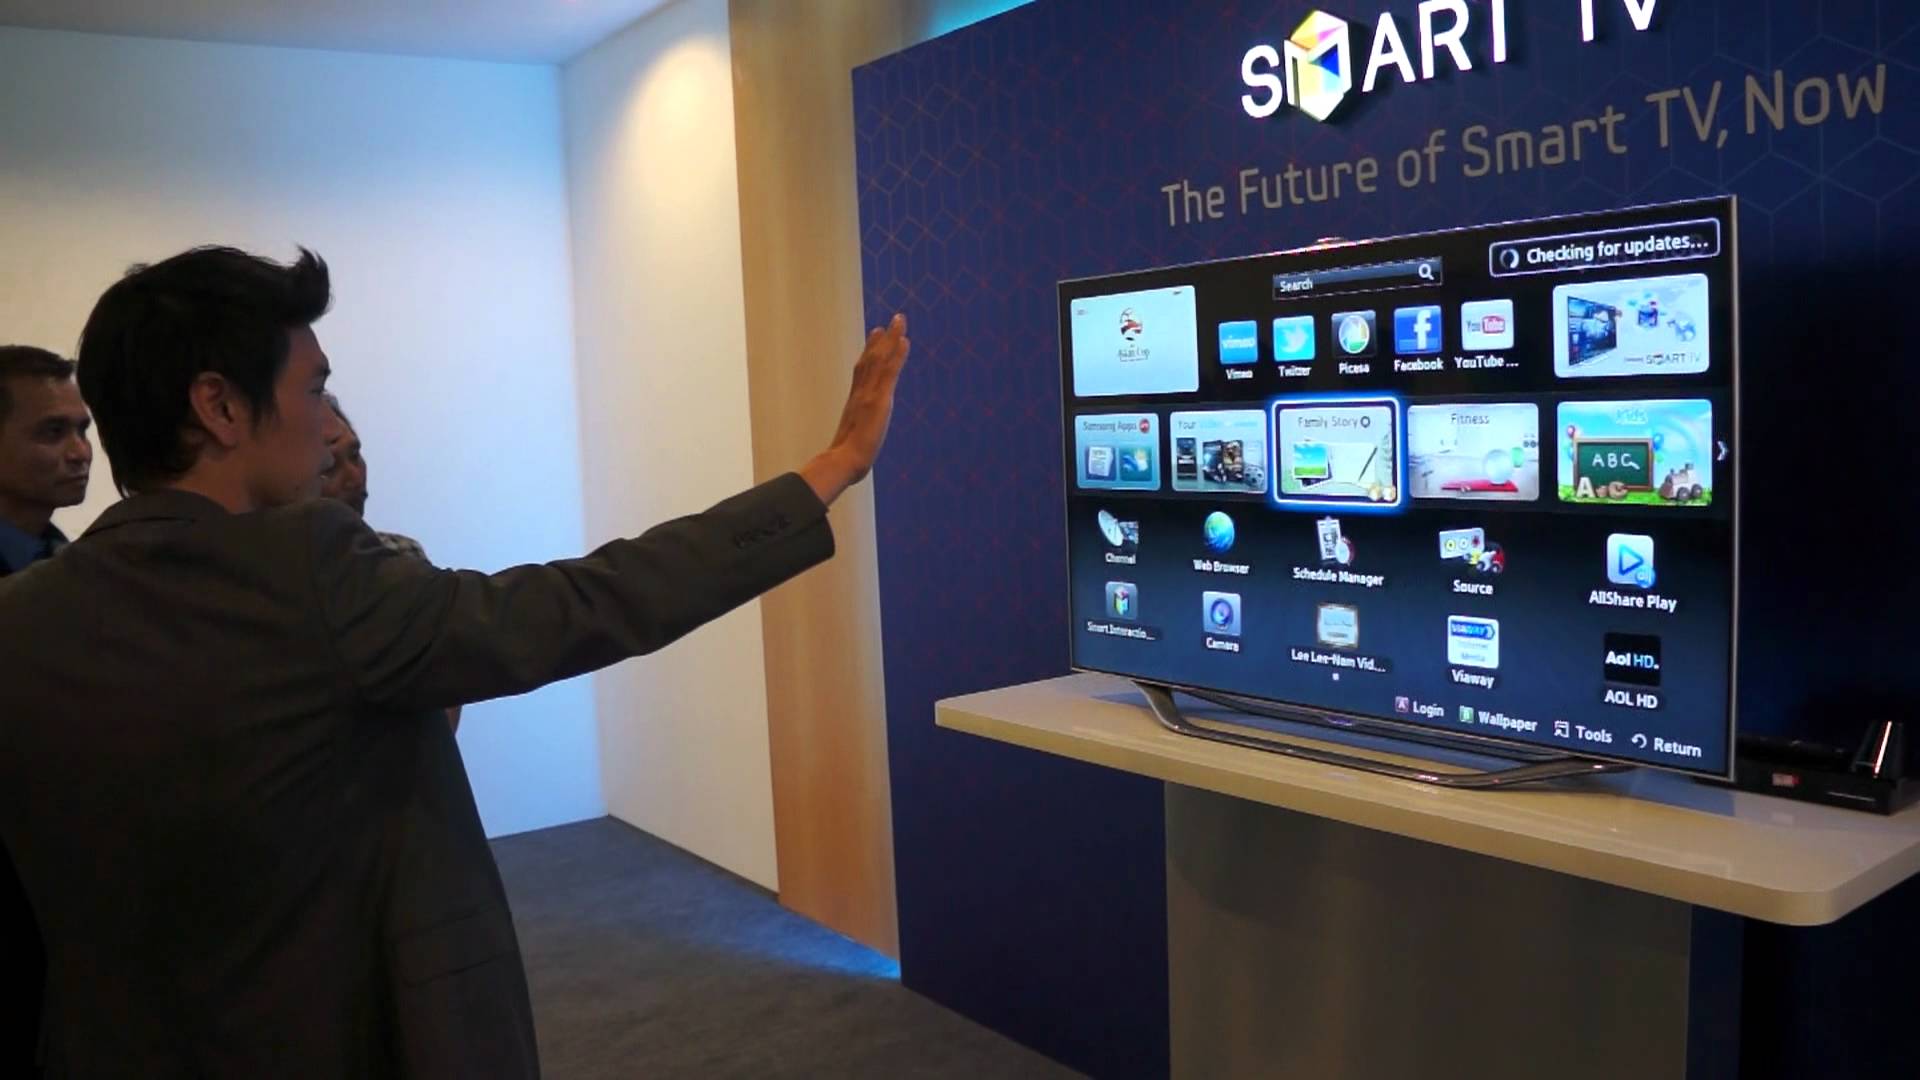 Регистрация телевизора самсунг. Smart TV es8000. Управление телевизором жестами. Технологии Samsung TV. Smart TV управление жестами.